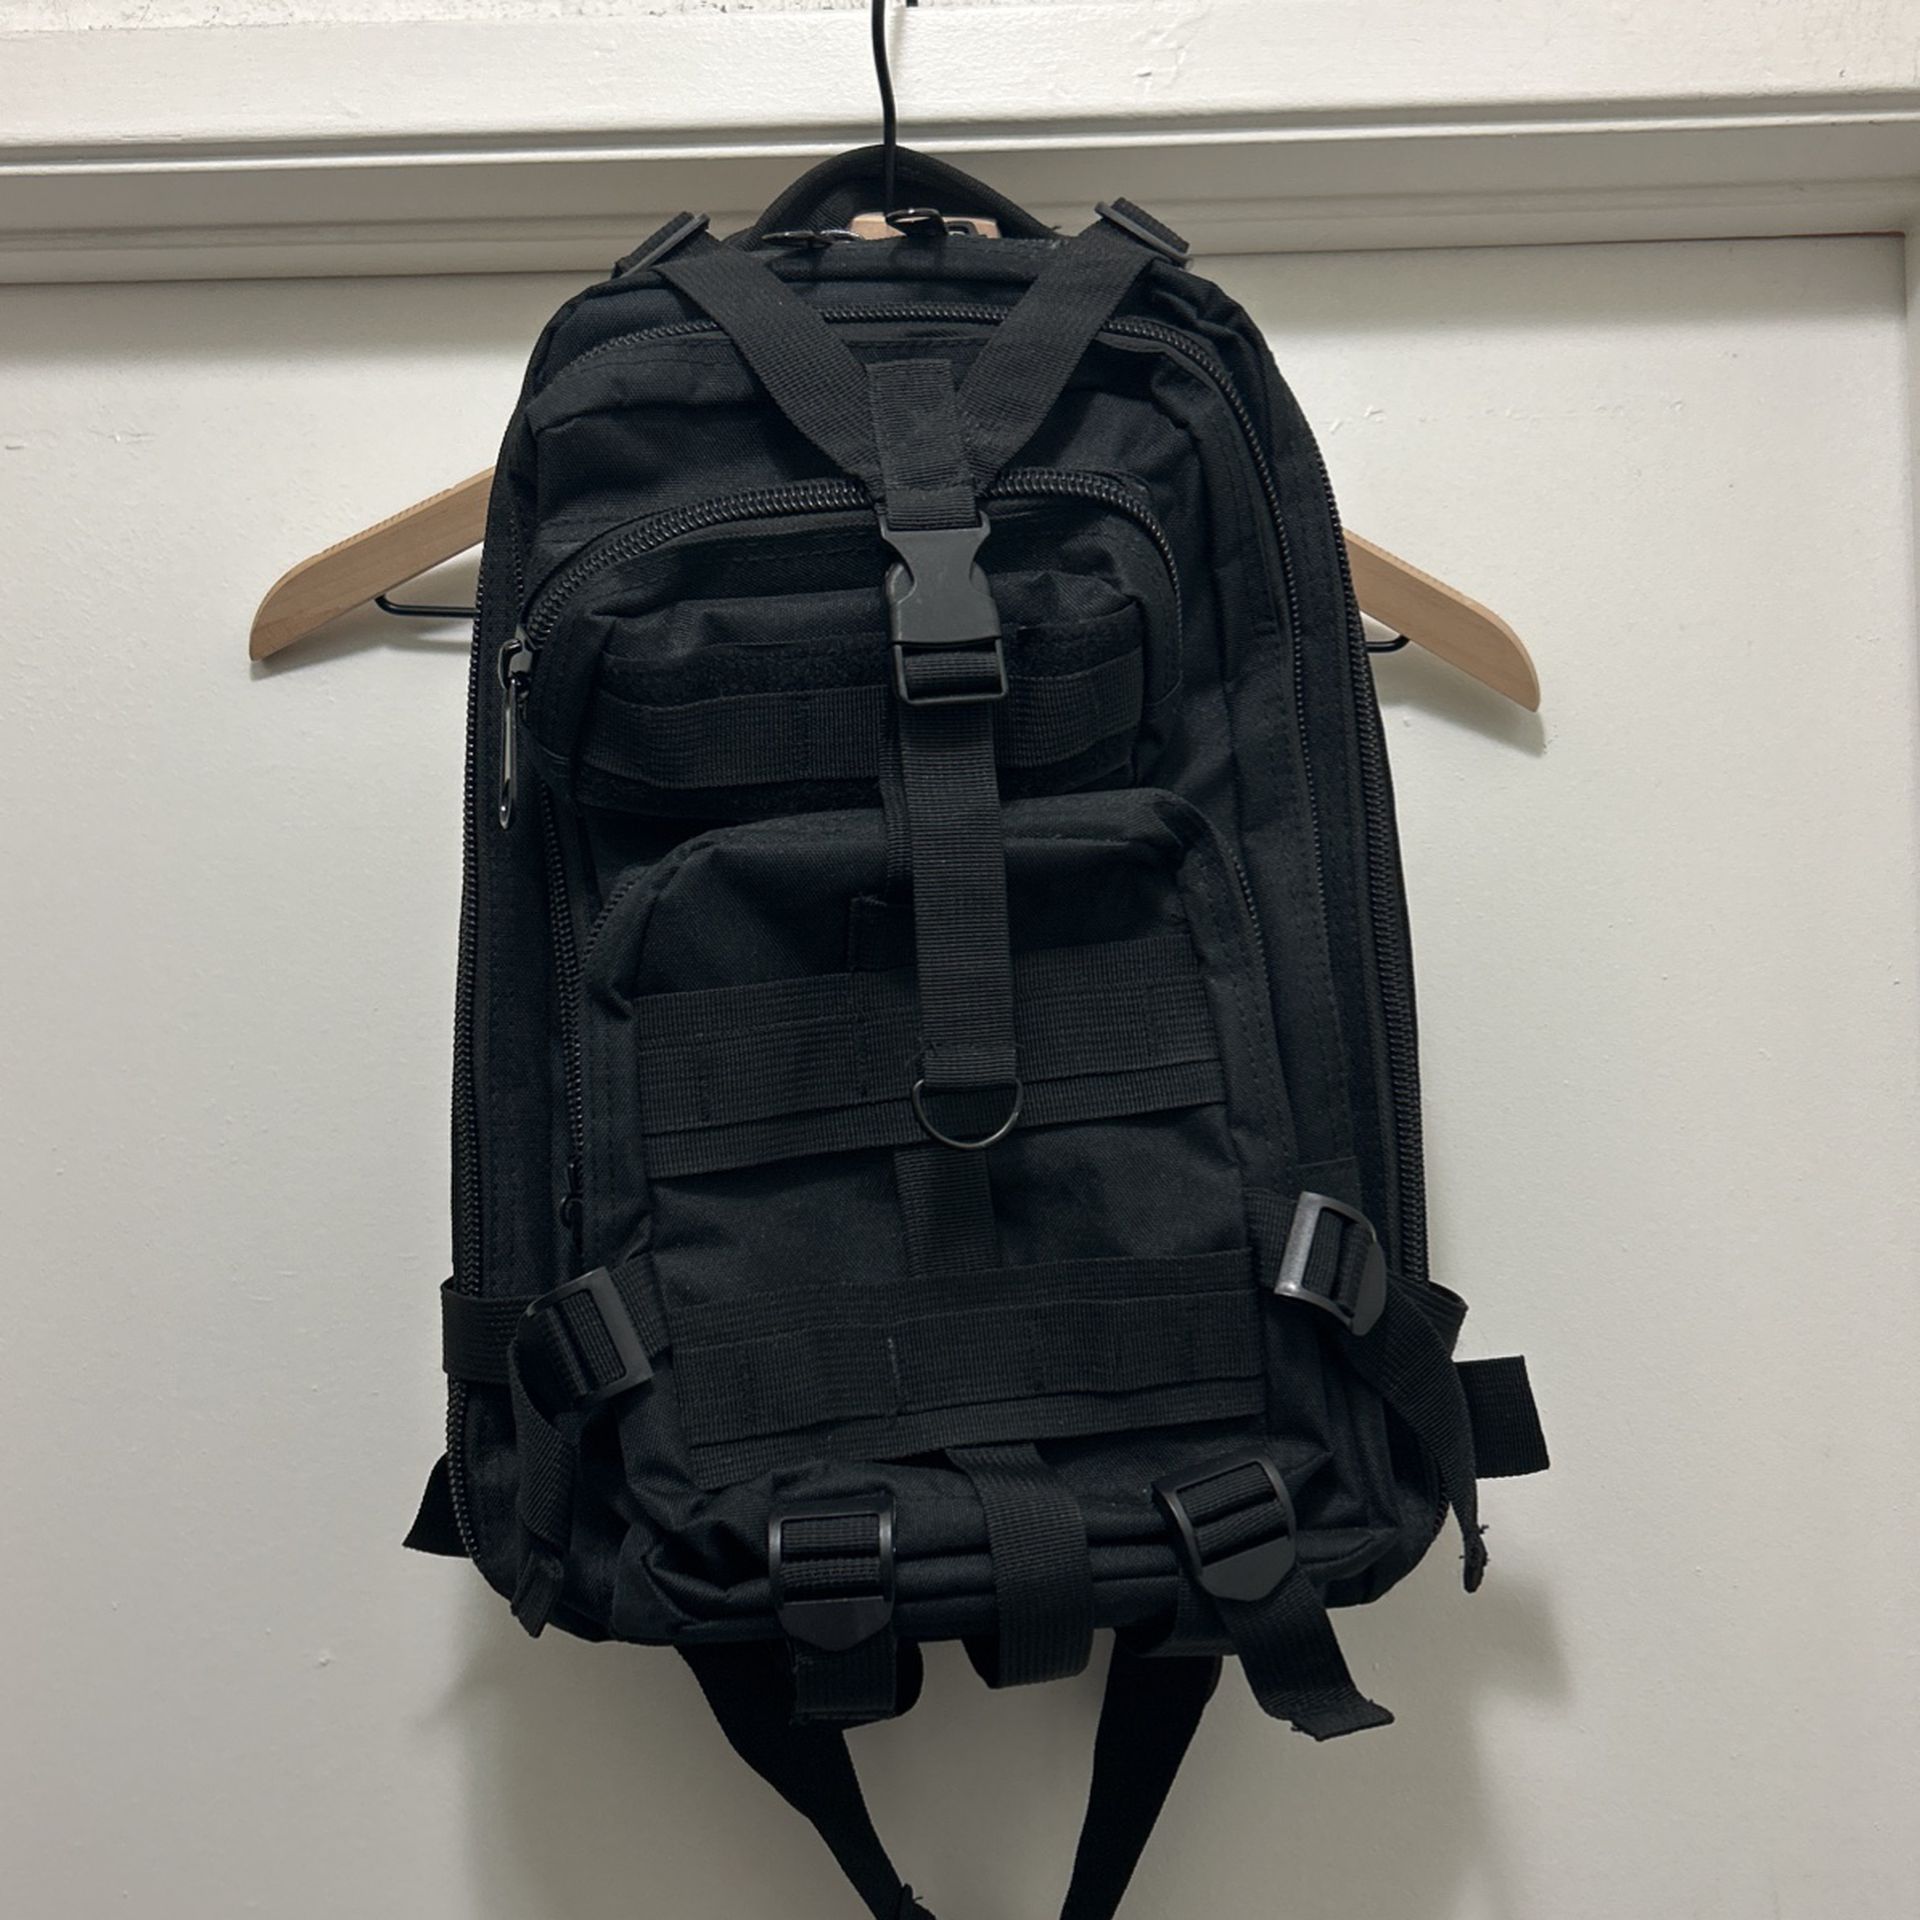 Tactical 20 Liter Backpack